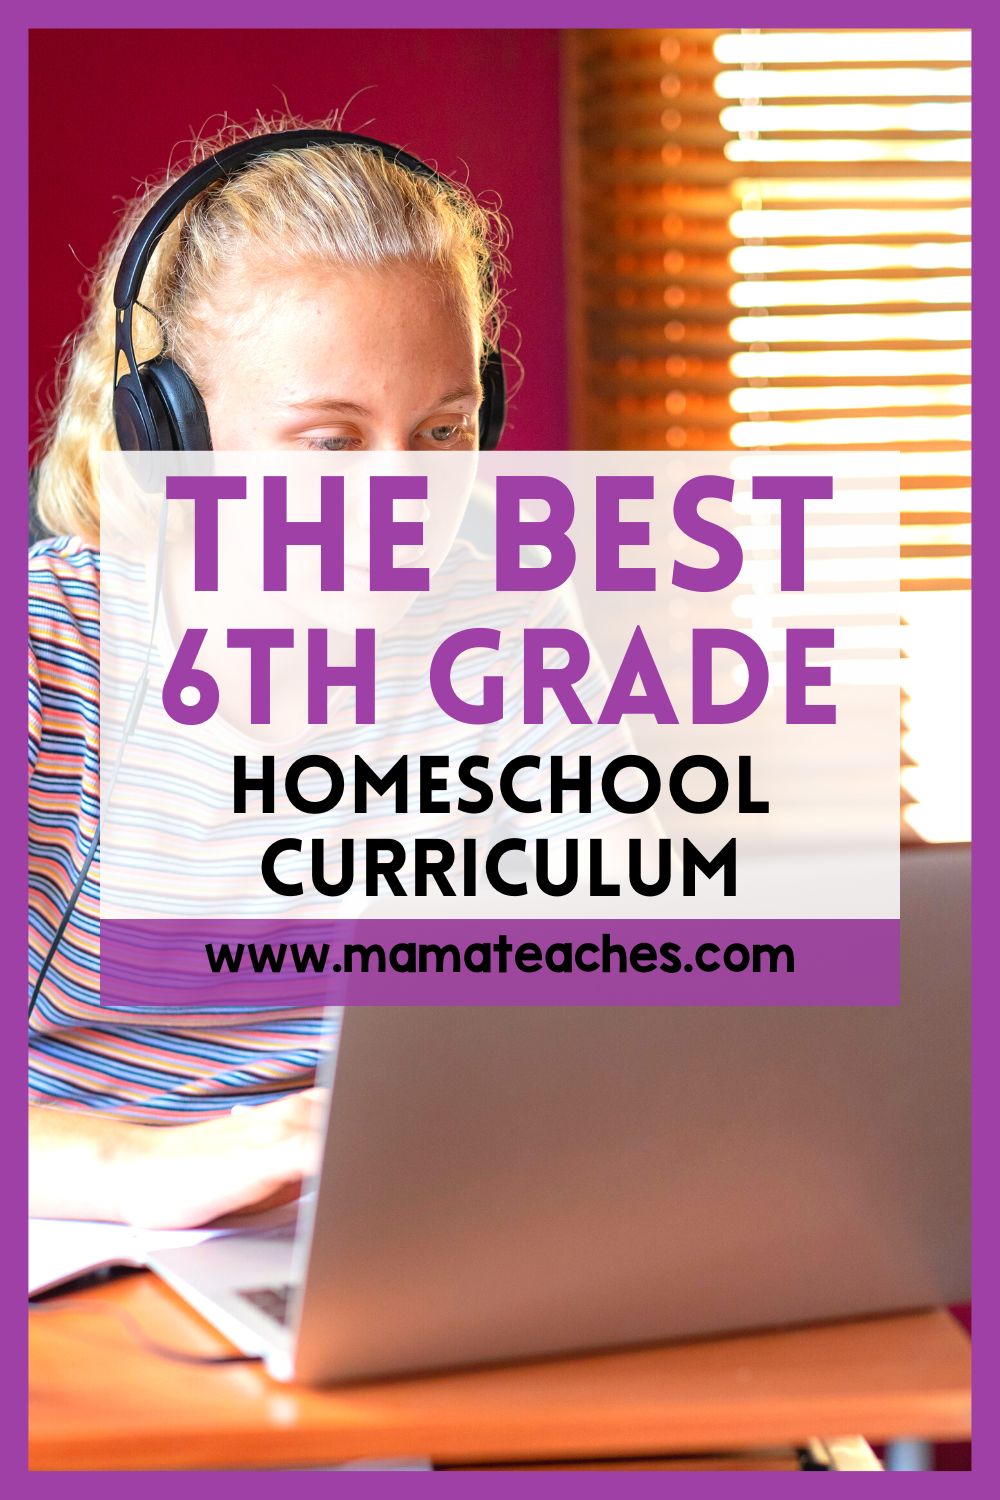 The Best 6th Grade Homeschool Curriculum